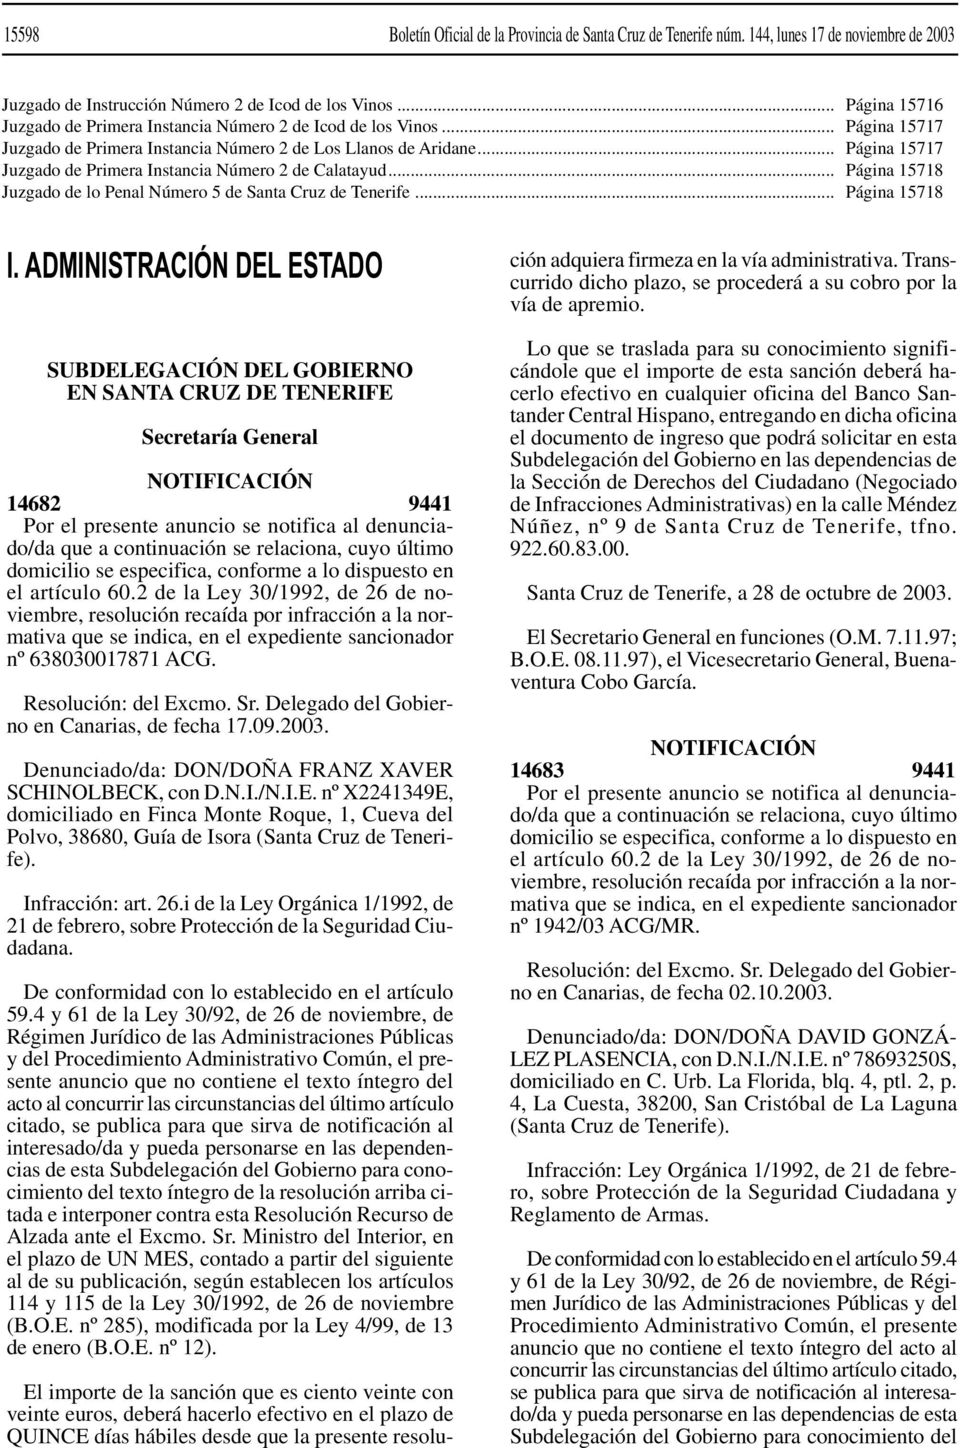 .. Juzgado de lo Penal Número 5 de Santa Cruz de Tenerife... Página 15716 Página 15717 Página 15717 Página 15718 Página 15718 I.